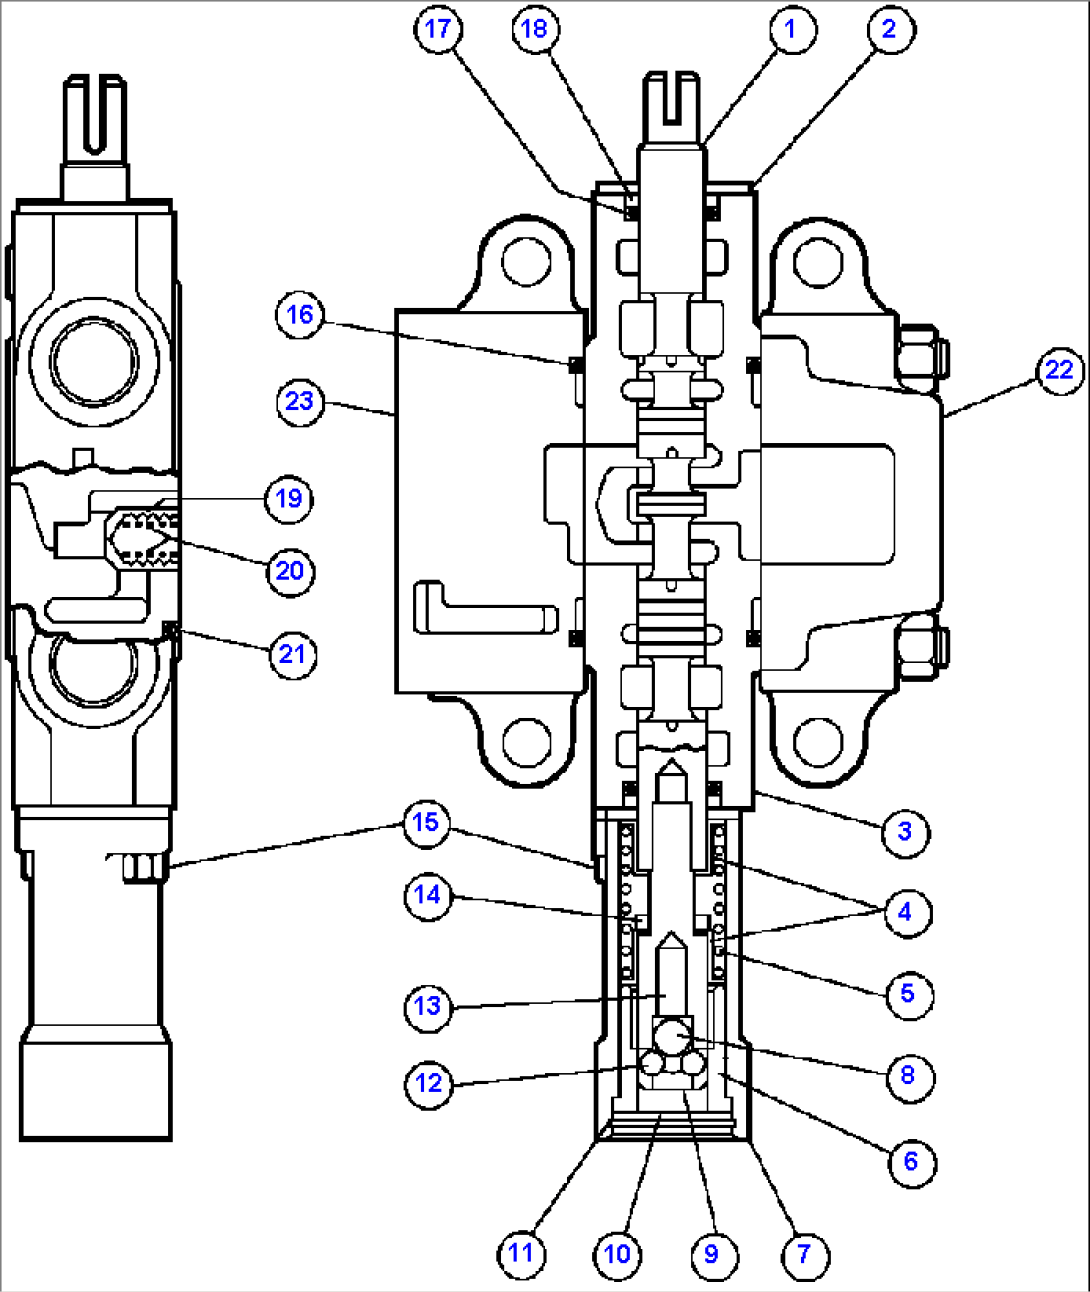 HOIST PILOT VALVE ASSM - 1 (PB8275)